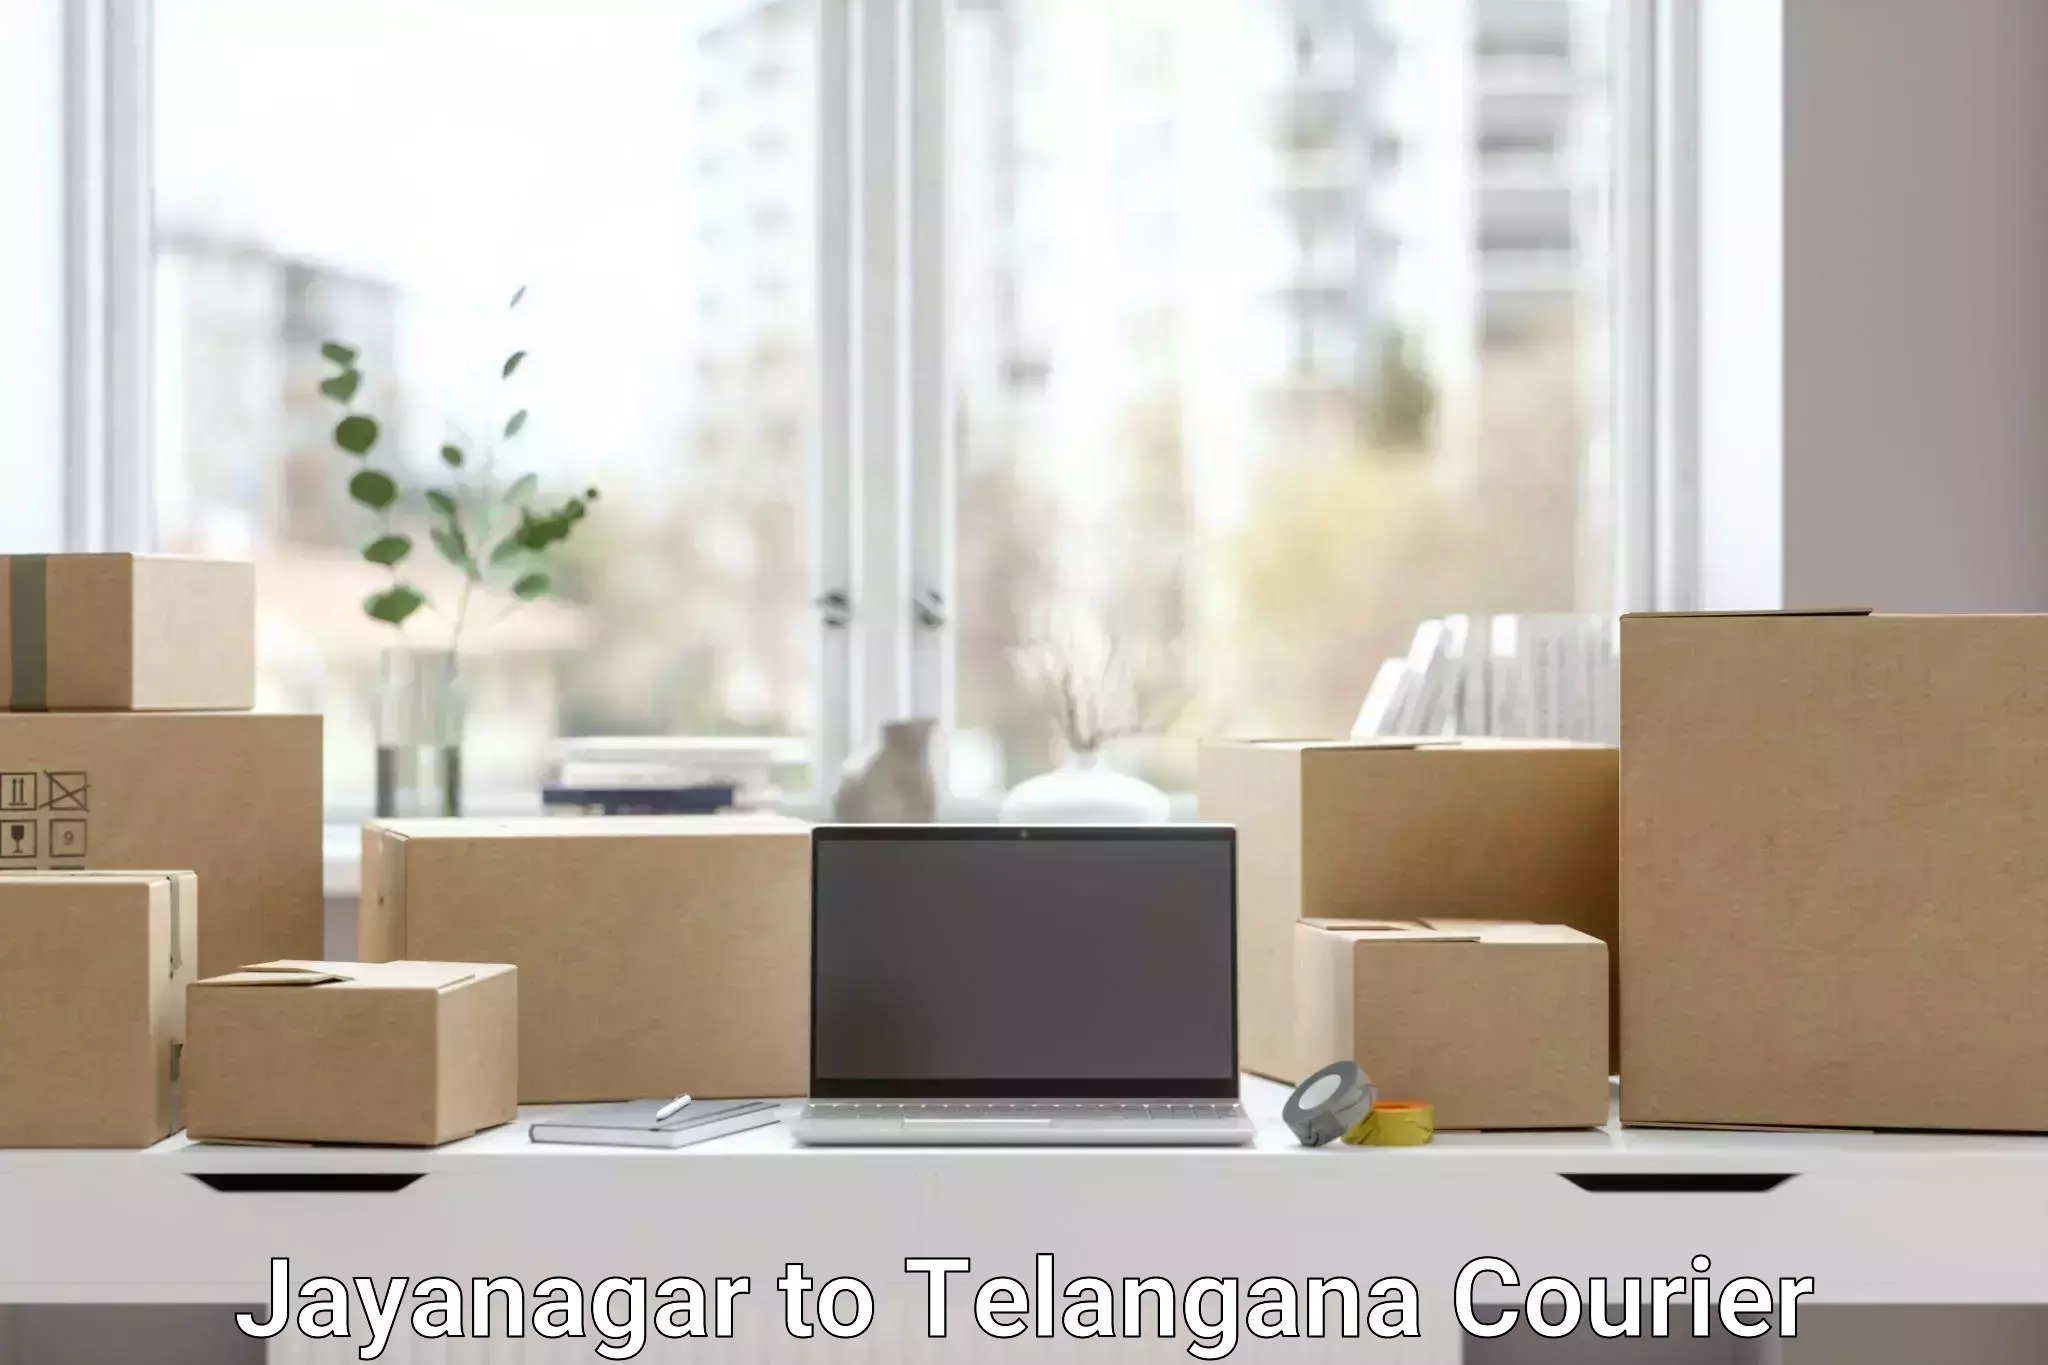 Personal parcel delivery Jayanagar to Wanaparthy